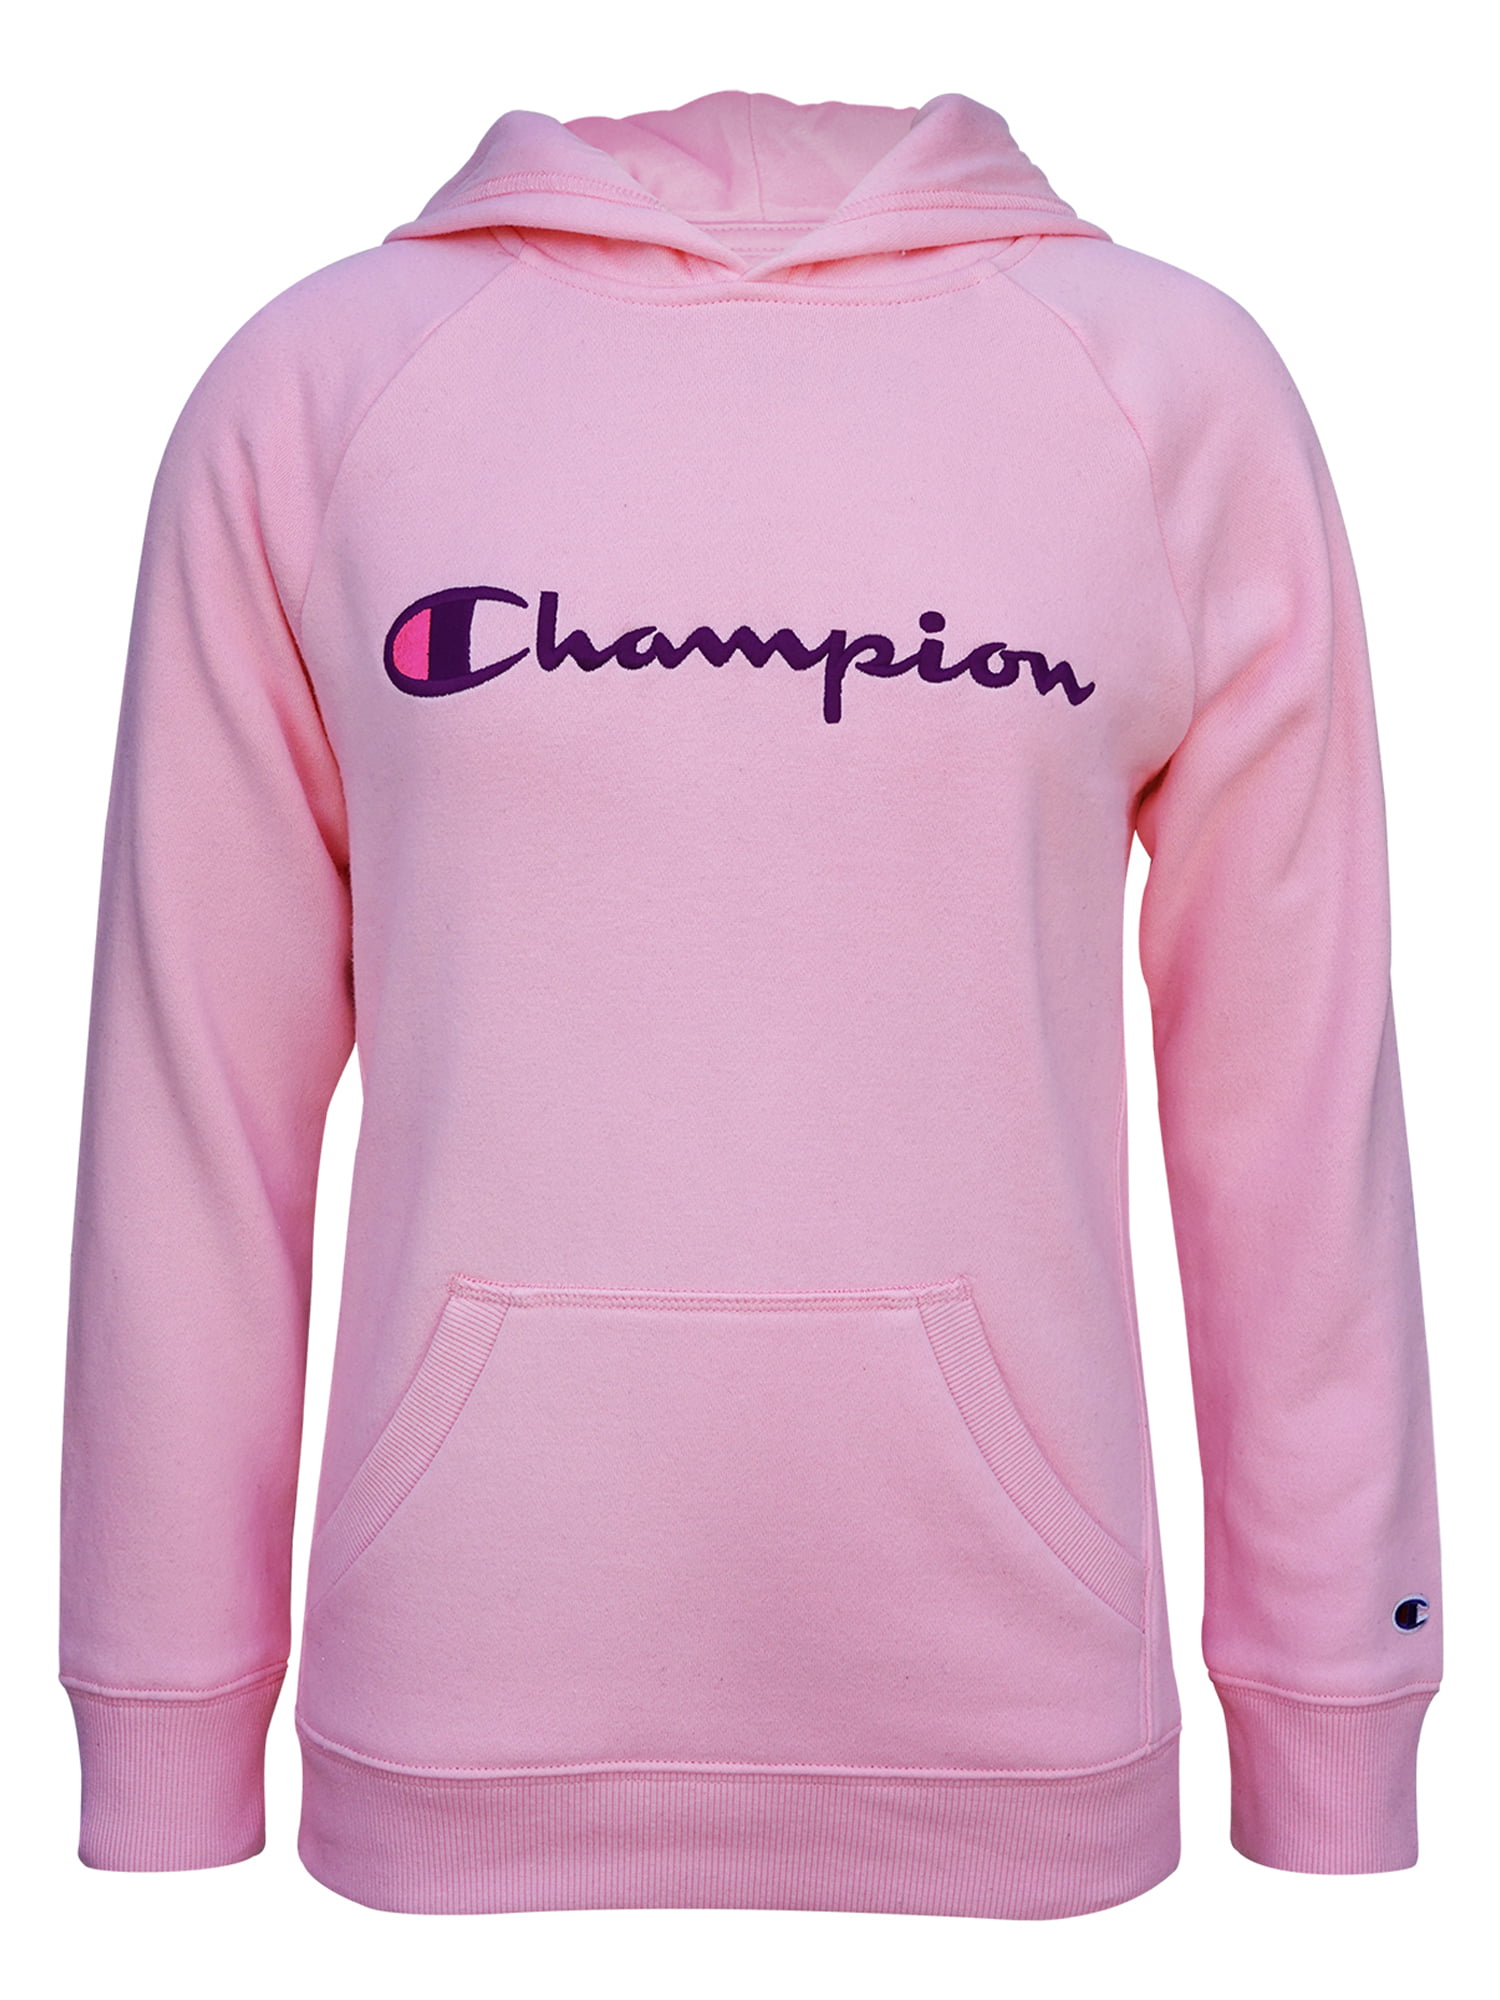 champion fleece jacket girls